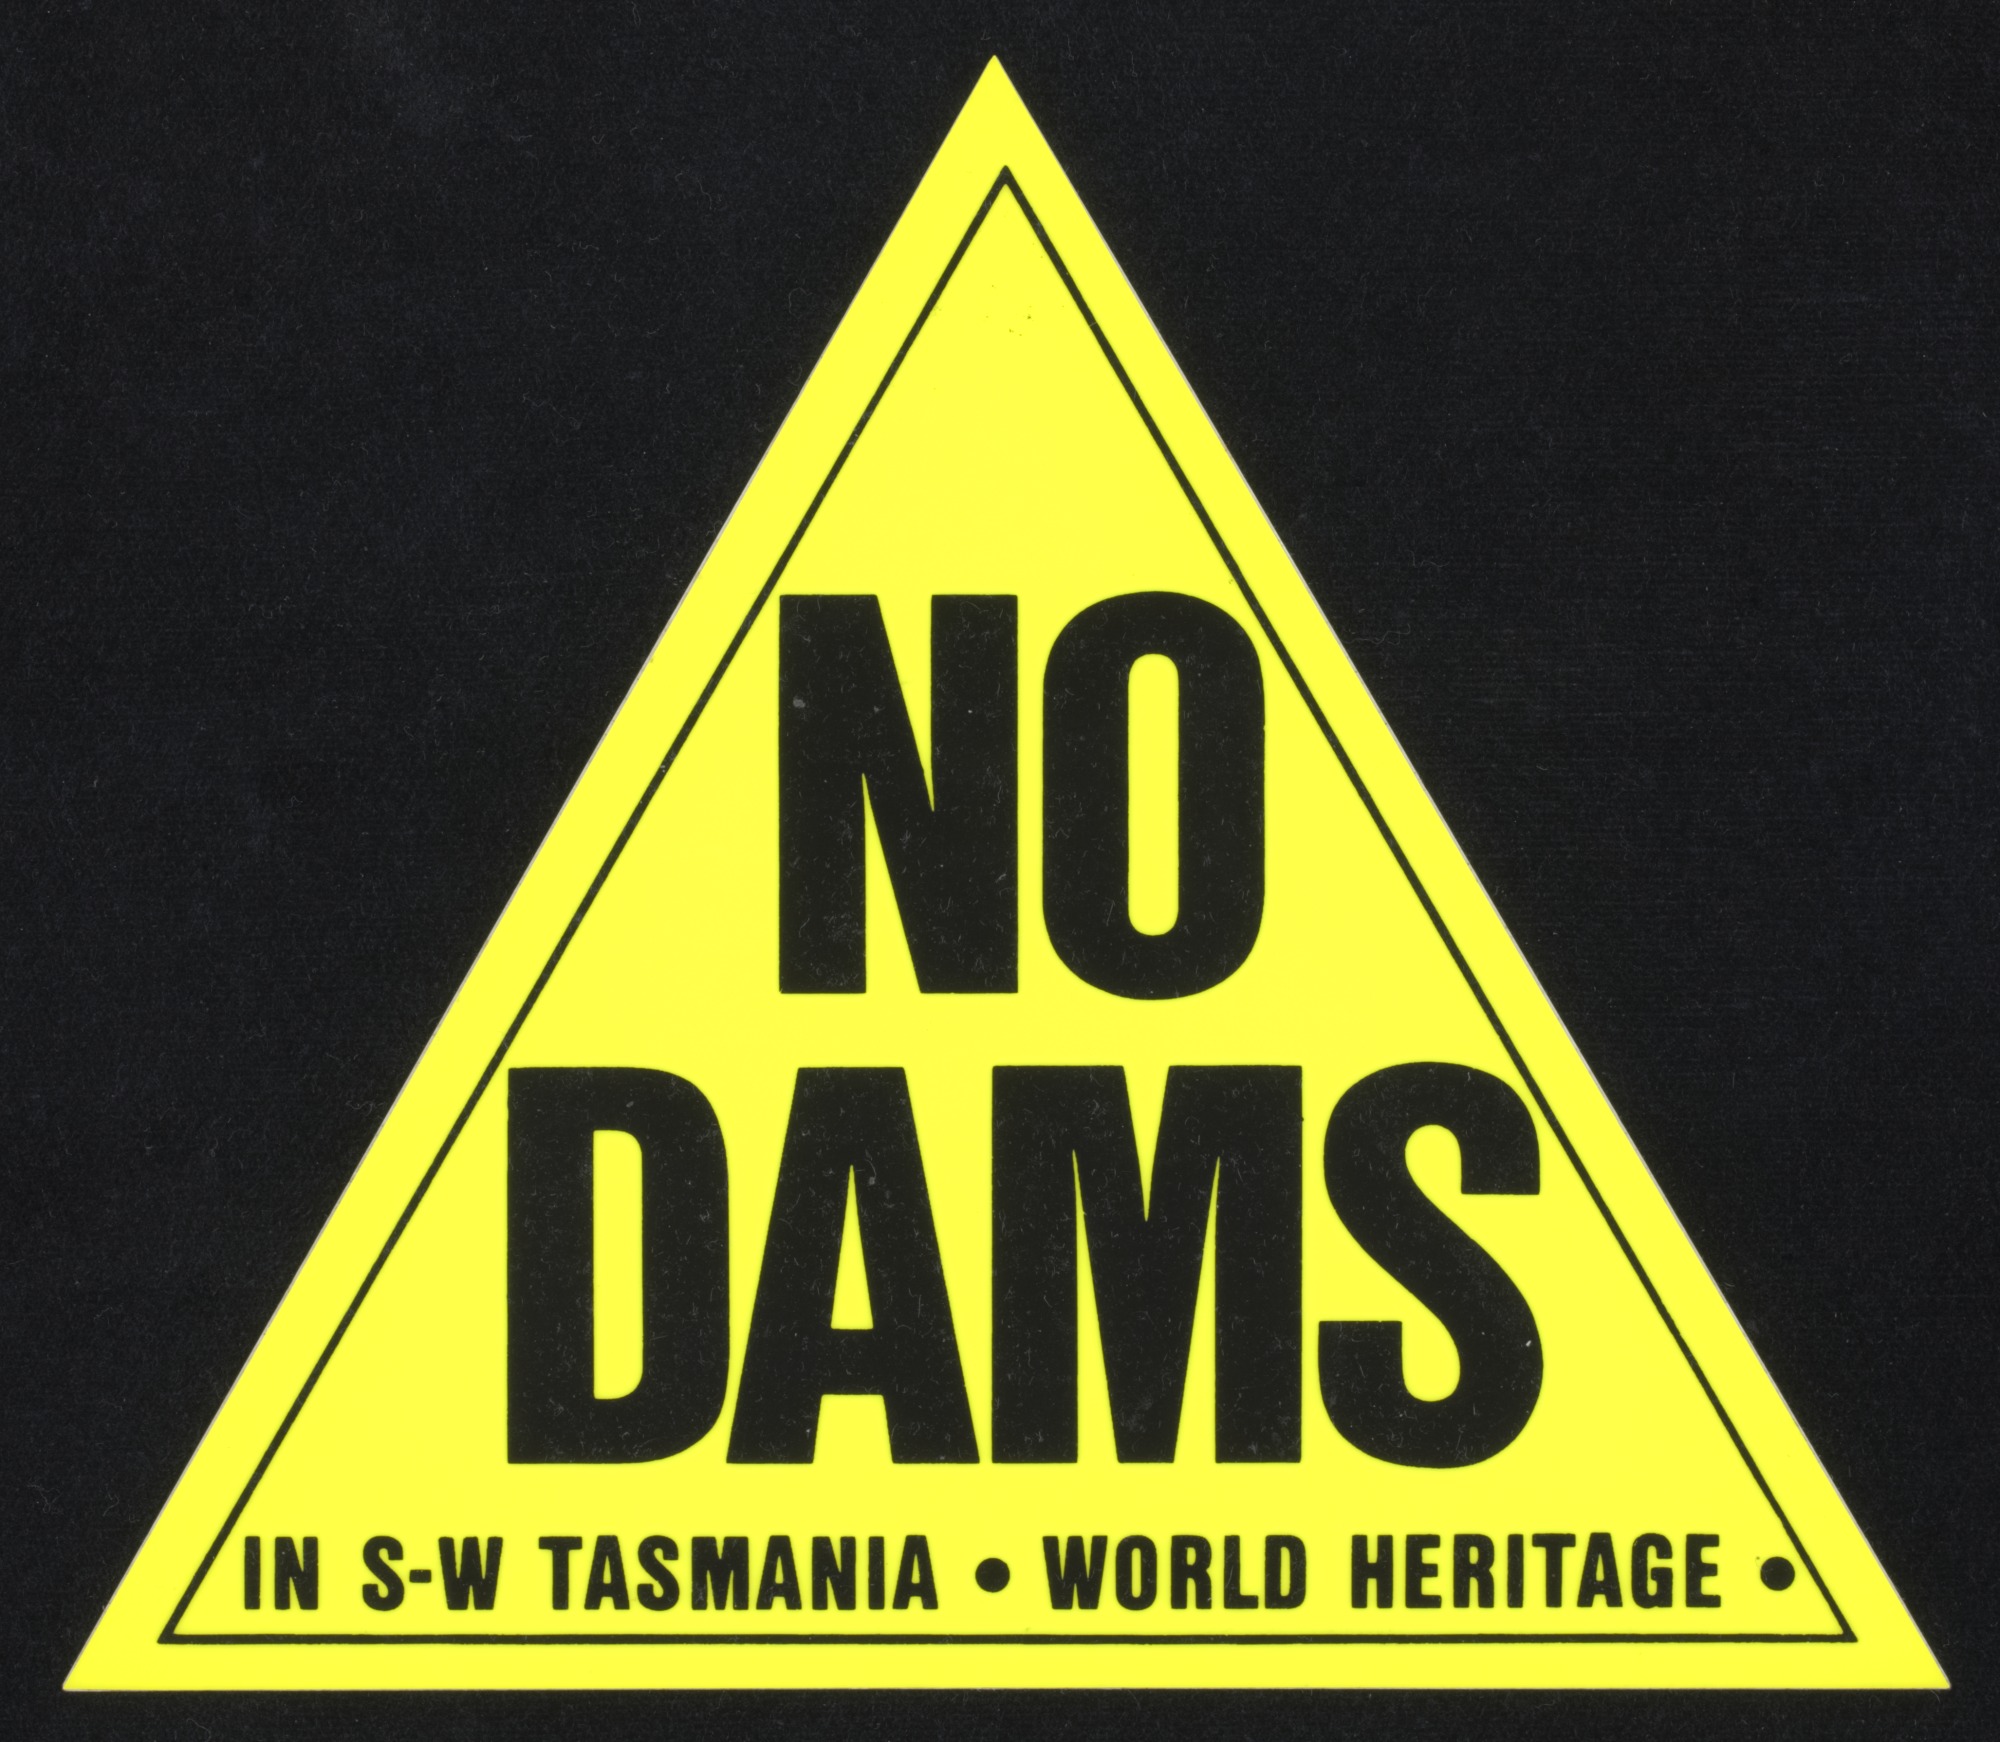 No Dams